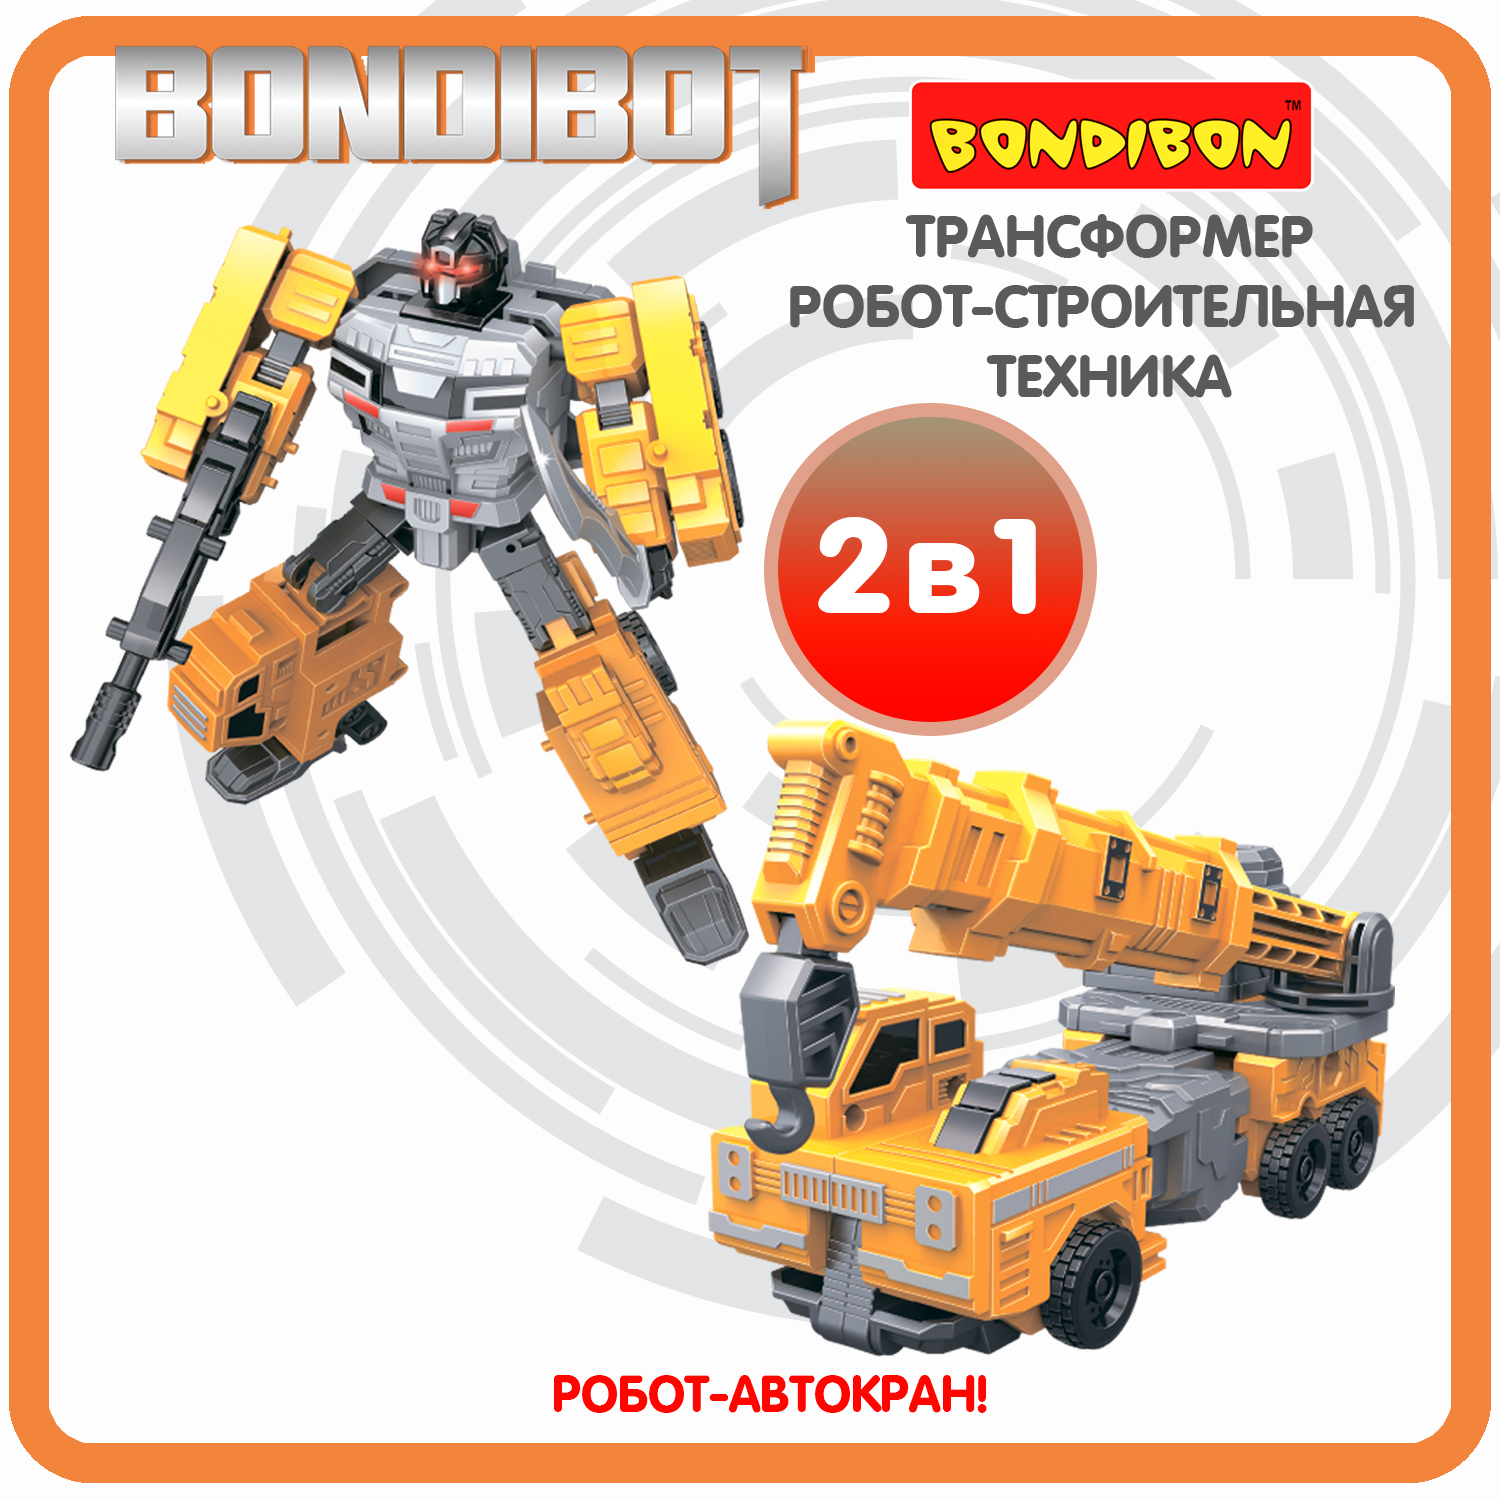 Трансформер робот-строительная техника, 2в1 BONDIBOT Bondibon, автокран / ВВ6050 трансформер робот строительная техника 2в1 bondibot bondibon самосвал вв6046